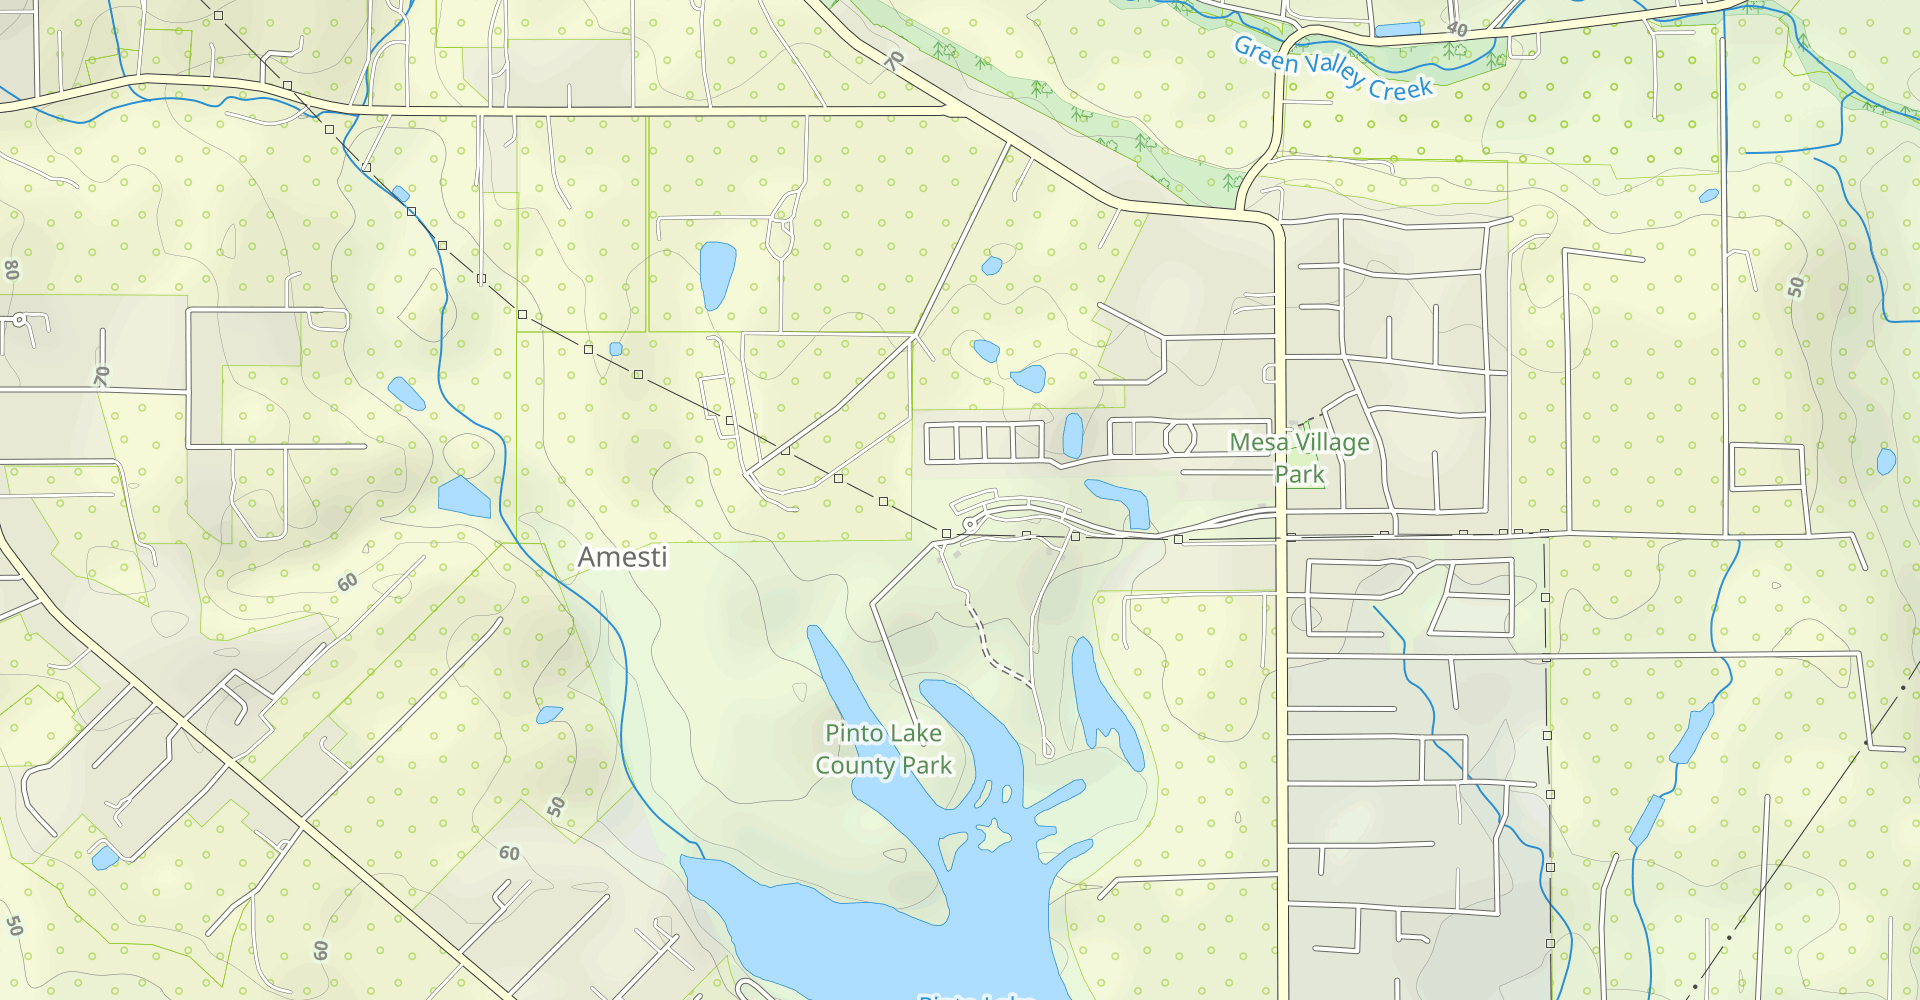 Pinto Lake County Park Loop